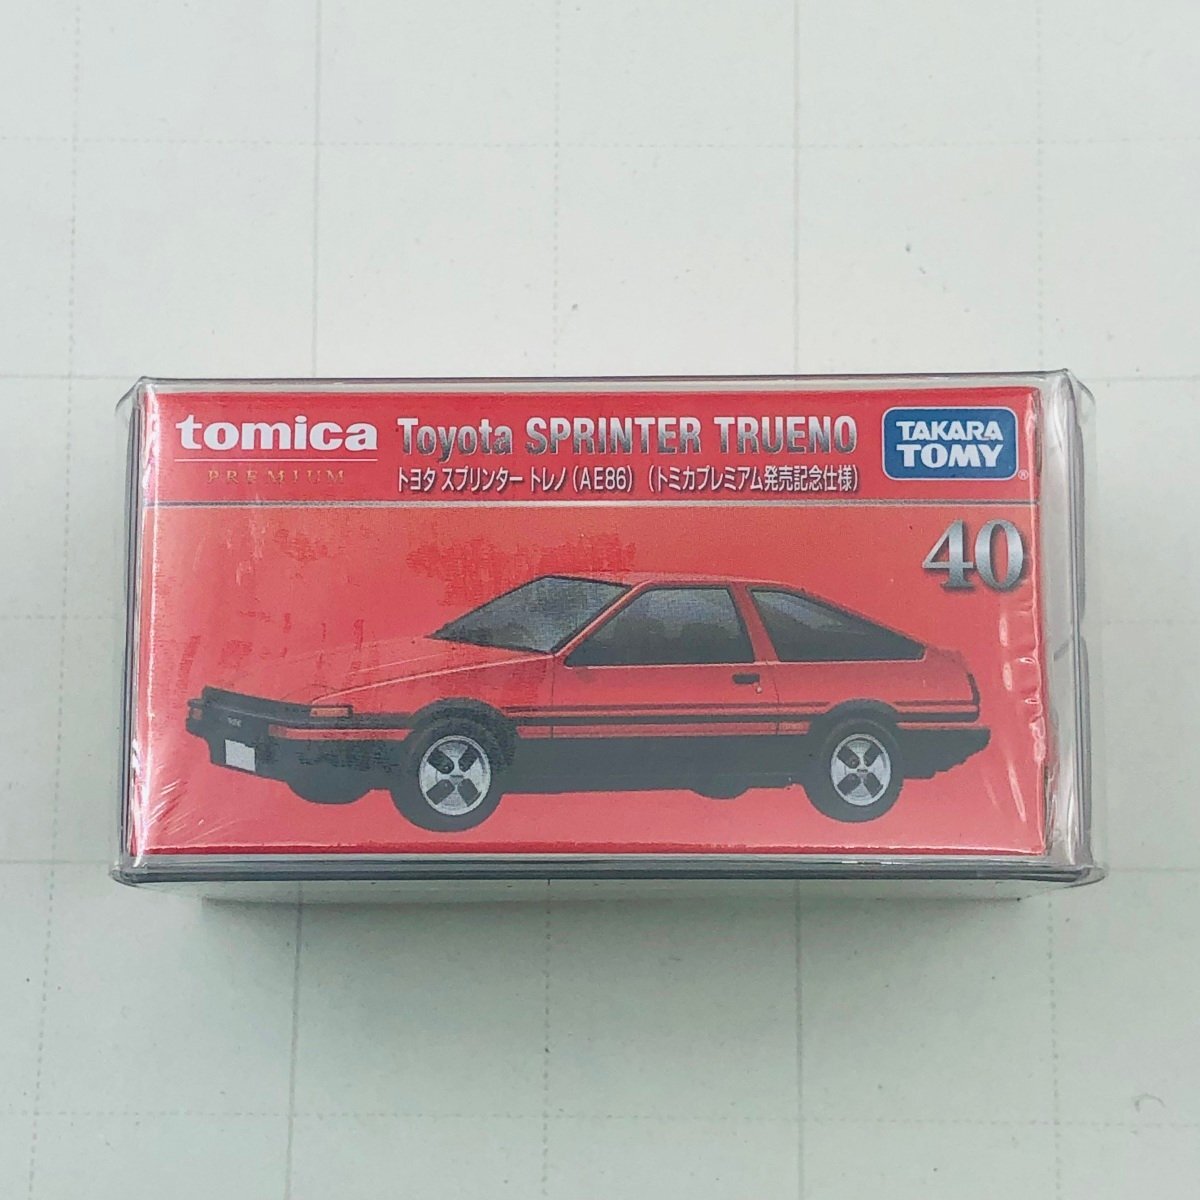 新品未開封 タカラトミー トミカ プレミアム 発売記念仕様 トヨタ スプリンター トレノ AE86 Toyota SPRINTER TRUENOの画像1